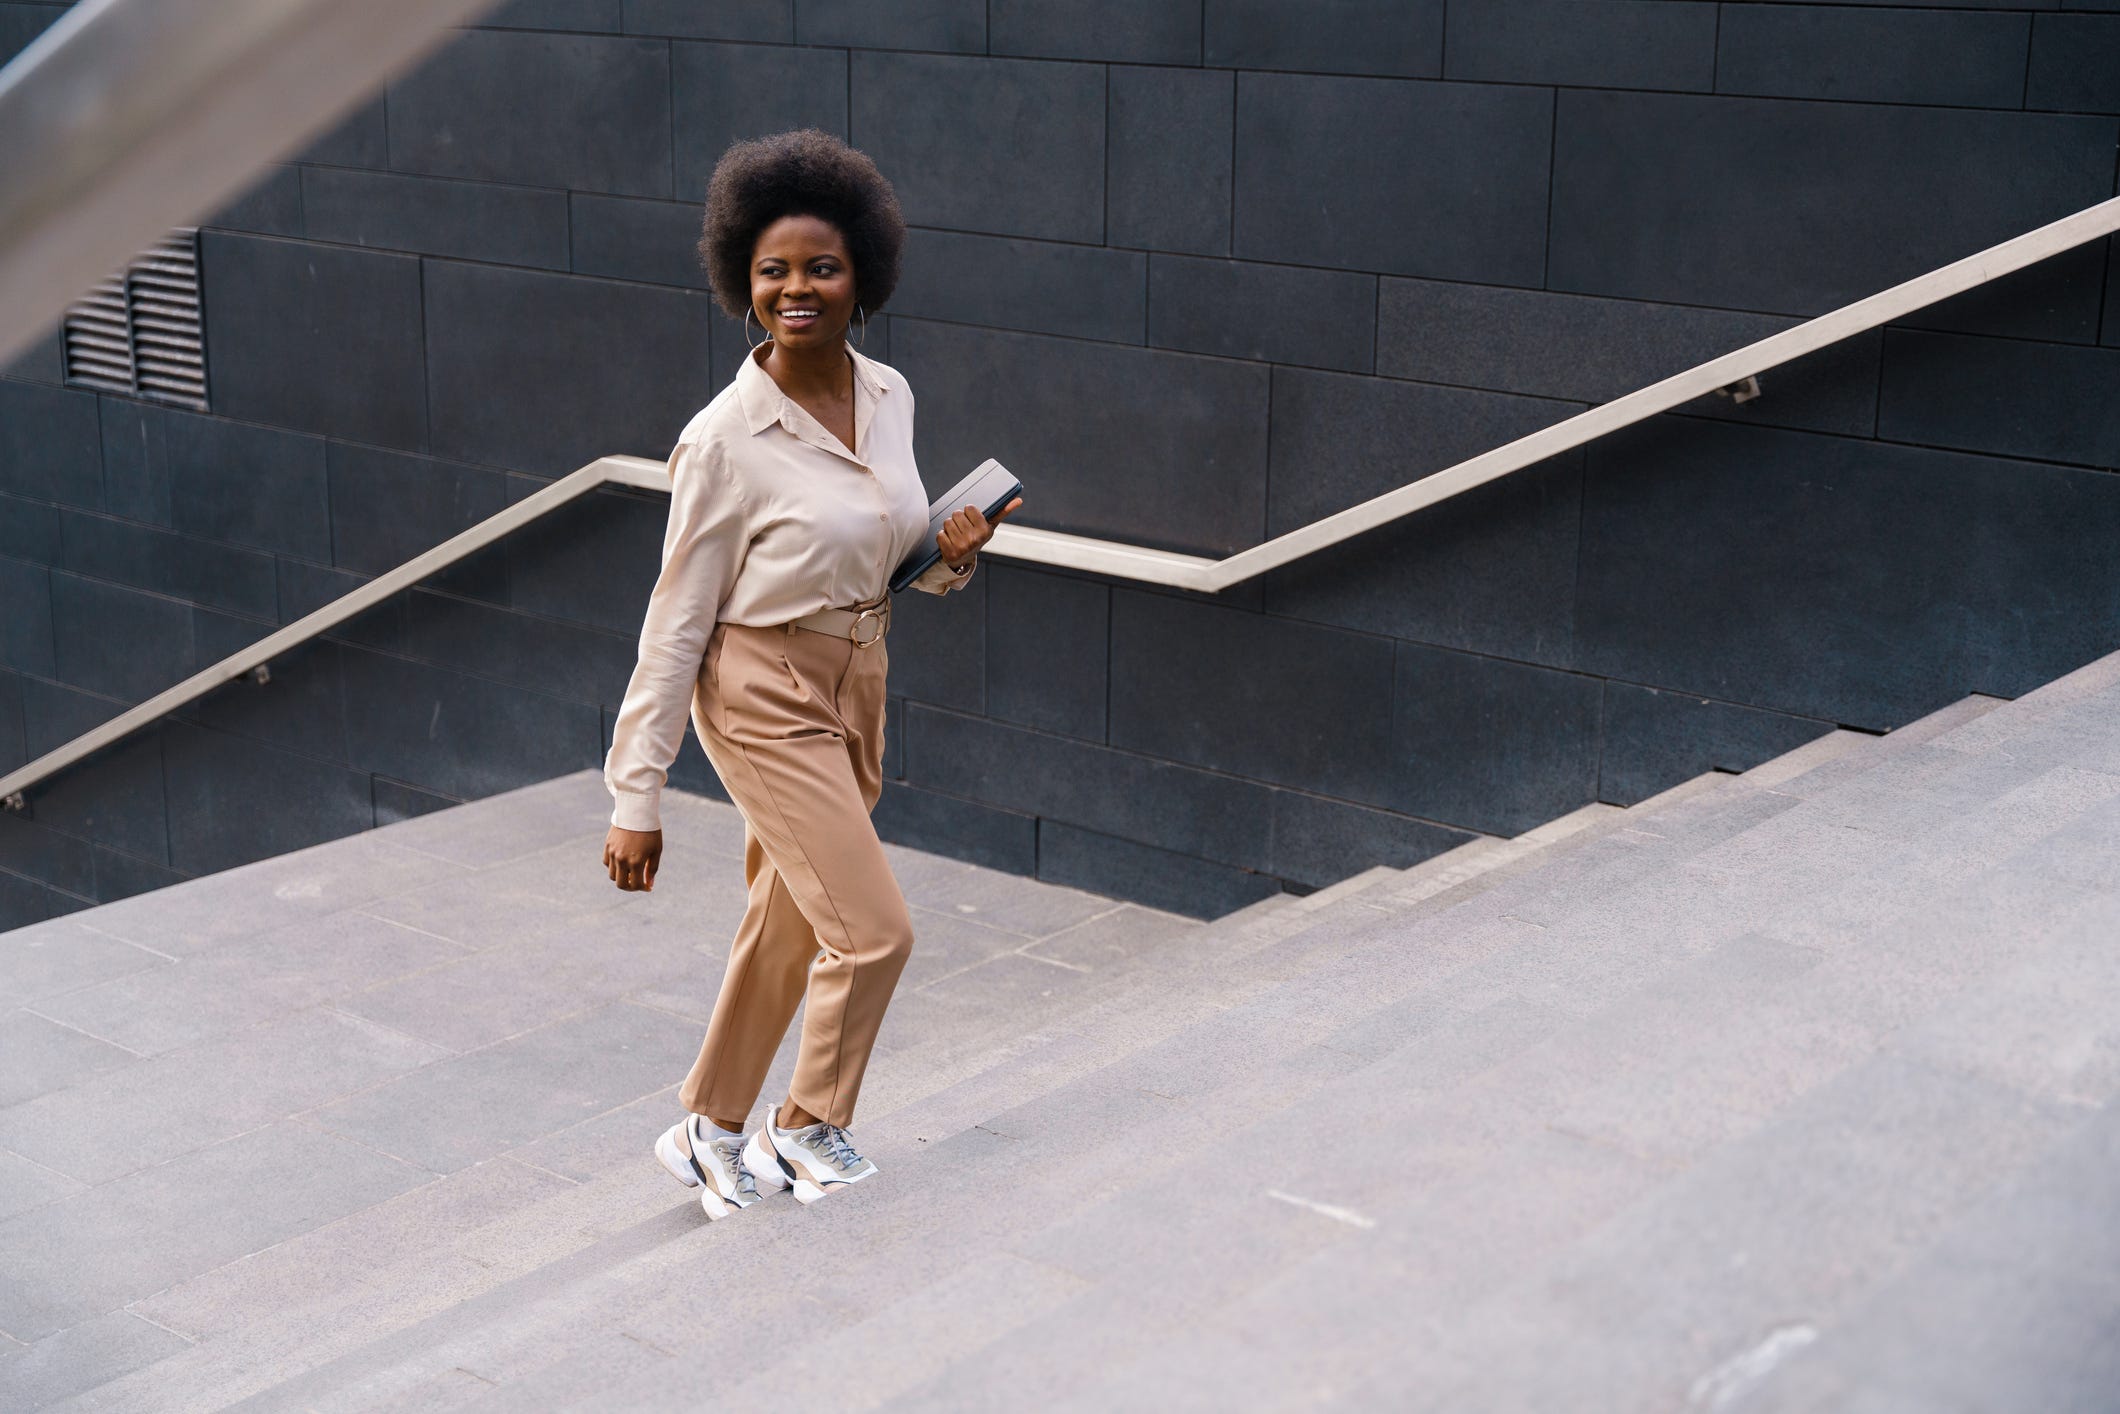 Eine Frau mit natürlicher Frisur, die eine cremefarbene Bluse und eine beige Hose trägt, lächelt und geht eine breite, geflieste Treppe hinauf